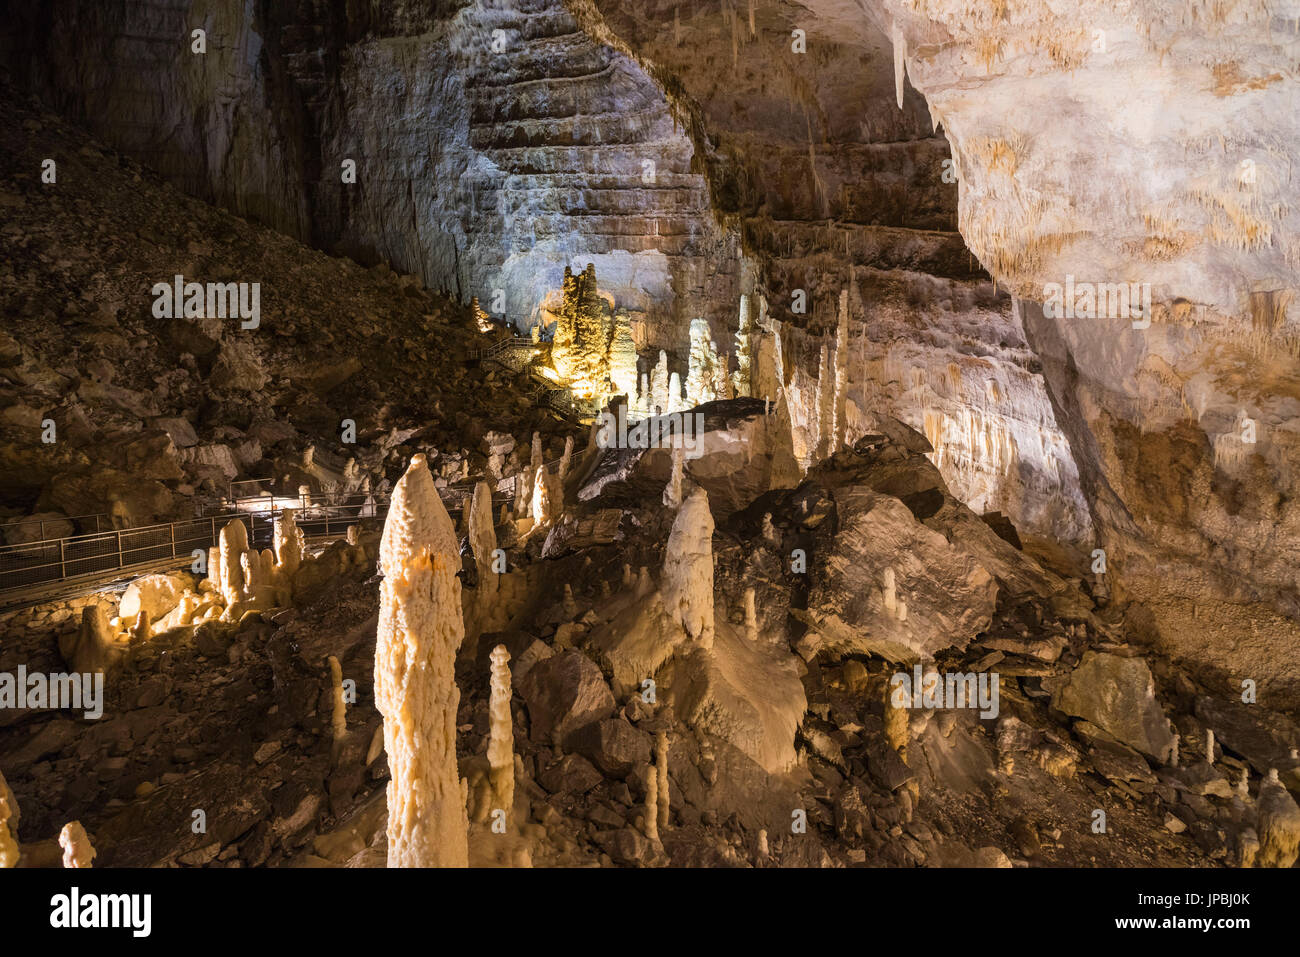 Le spectacle naturel des grottes de Frasassi avec des stalactites et stalagmites Arcevia Province d'Ancône Marches Italie Europe Banque D'Images